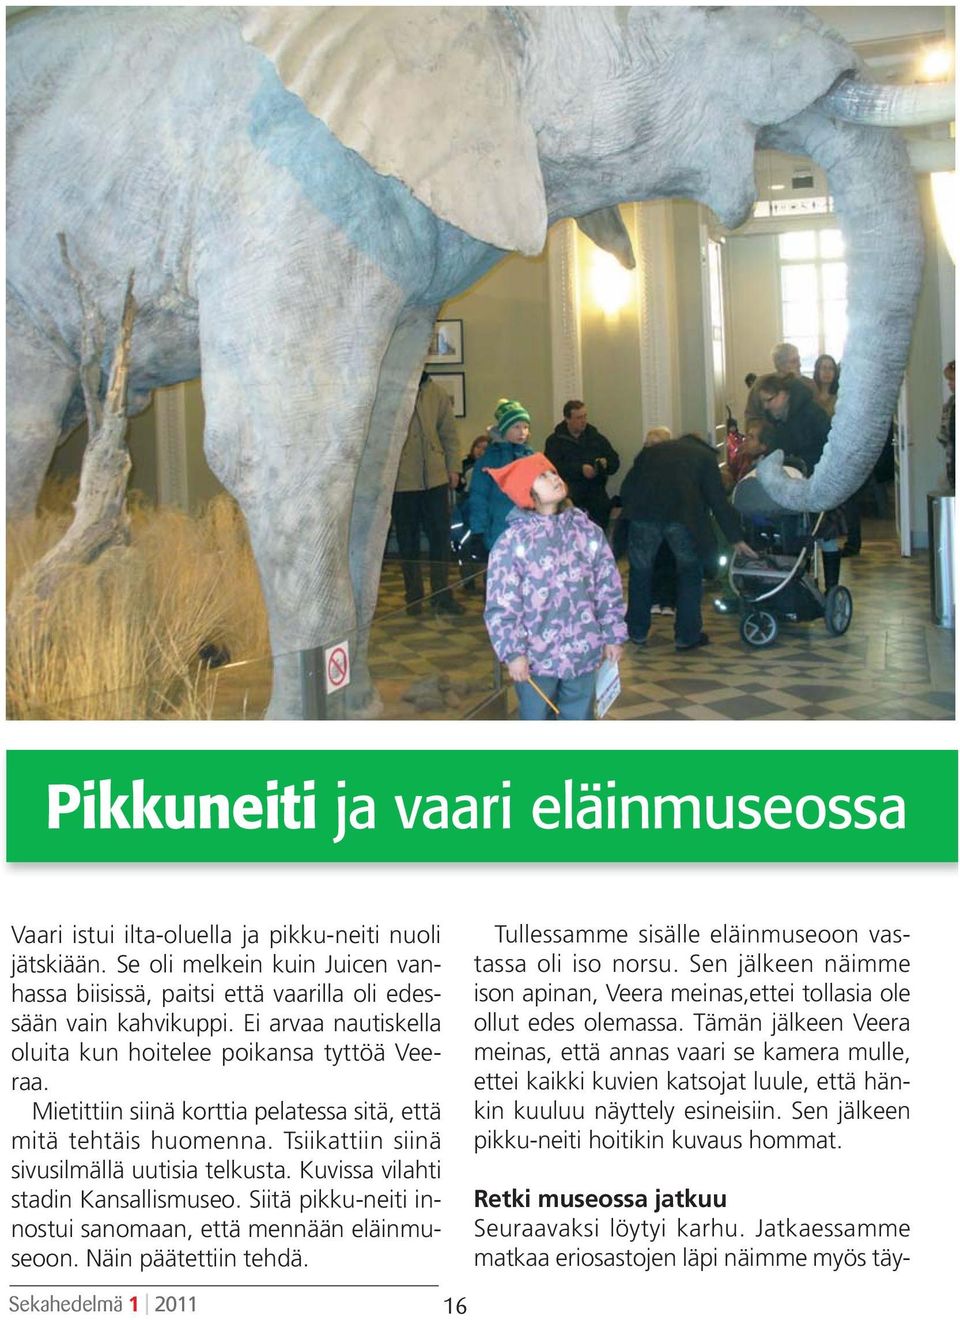 Kuvissa vilahti stadin Kansallismuseo. Siitä pikku-neiti innostui sanomaan, että mennään eläinmuseoon. Näin päätettiin tehdä. Tullessamme sisälle eläinmuseoon vastassa oli iso norsu.